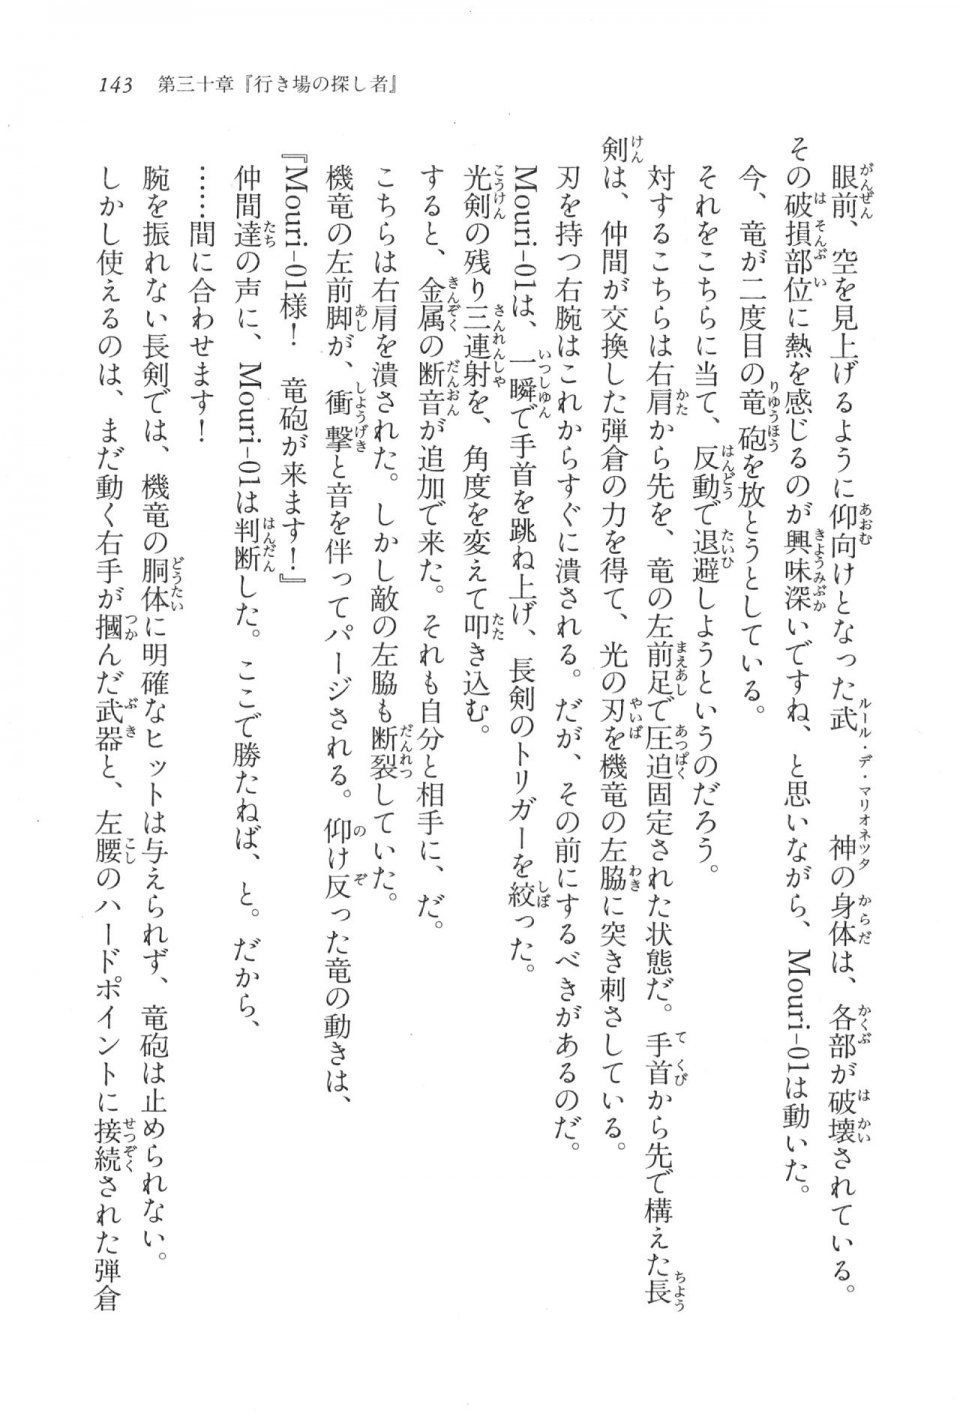 Kyoukai Senjou no Horizon LN Vol 17(7B) - Photo #143